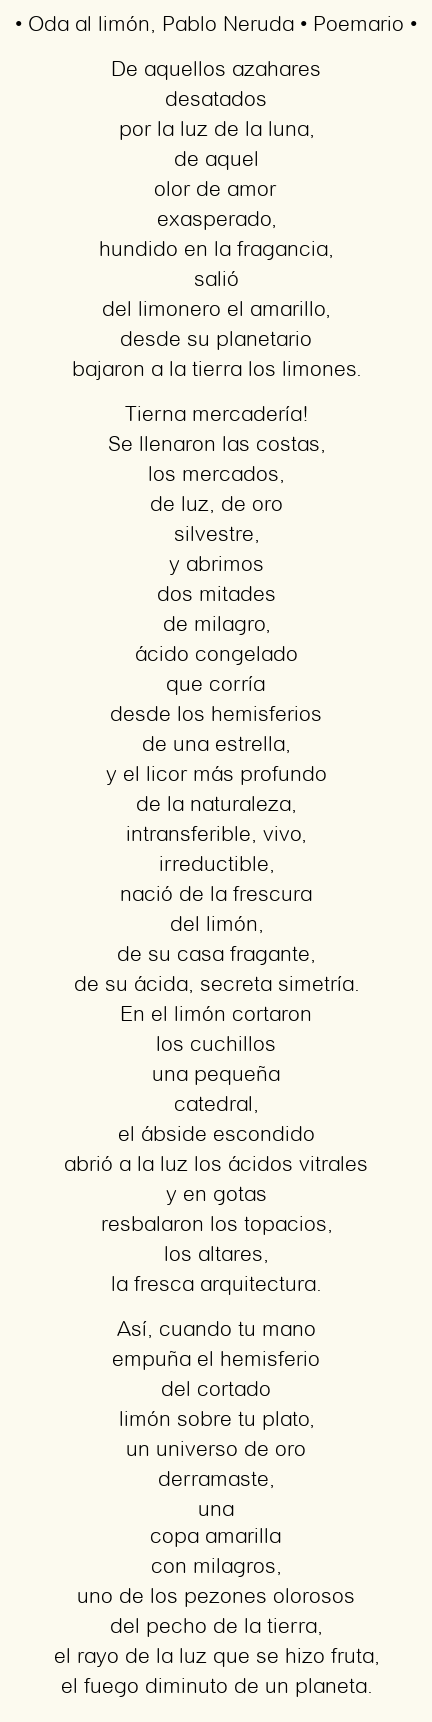 Imagen con el poema Oda al limón, por Pablo Neruda